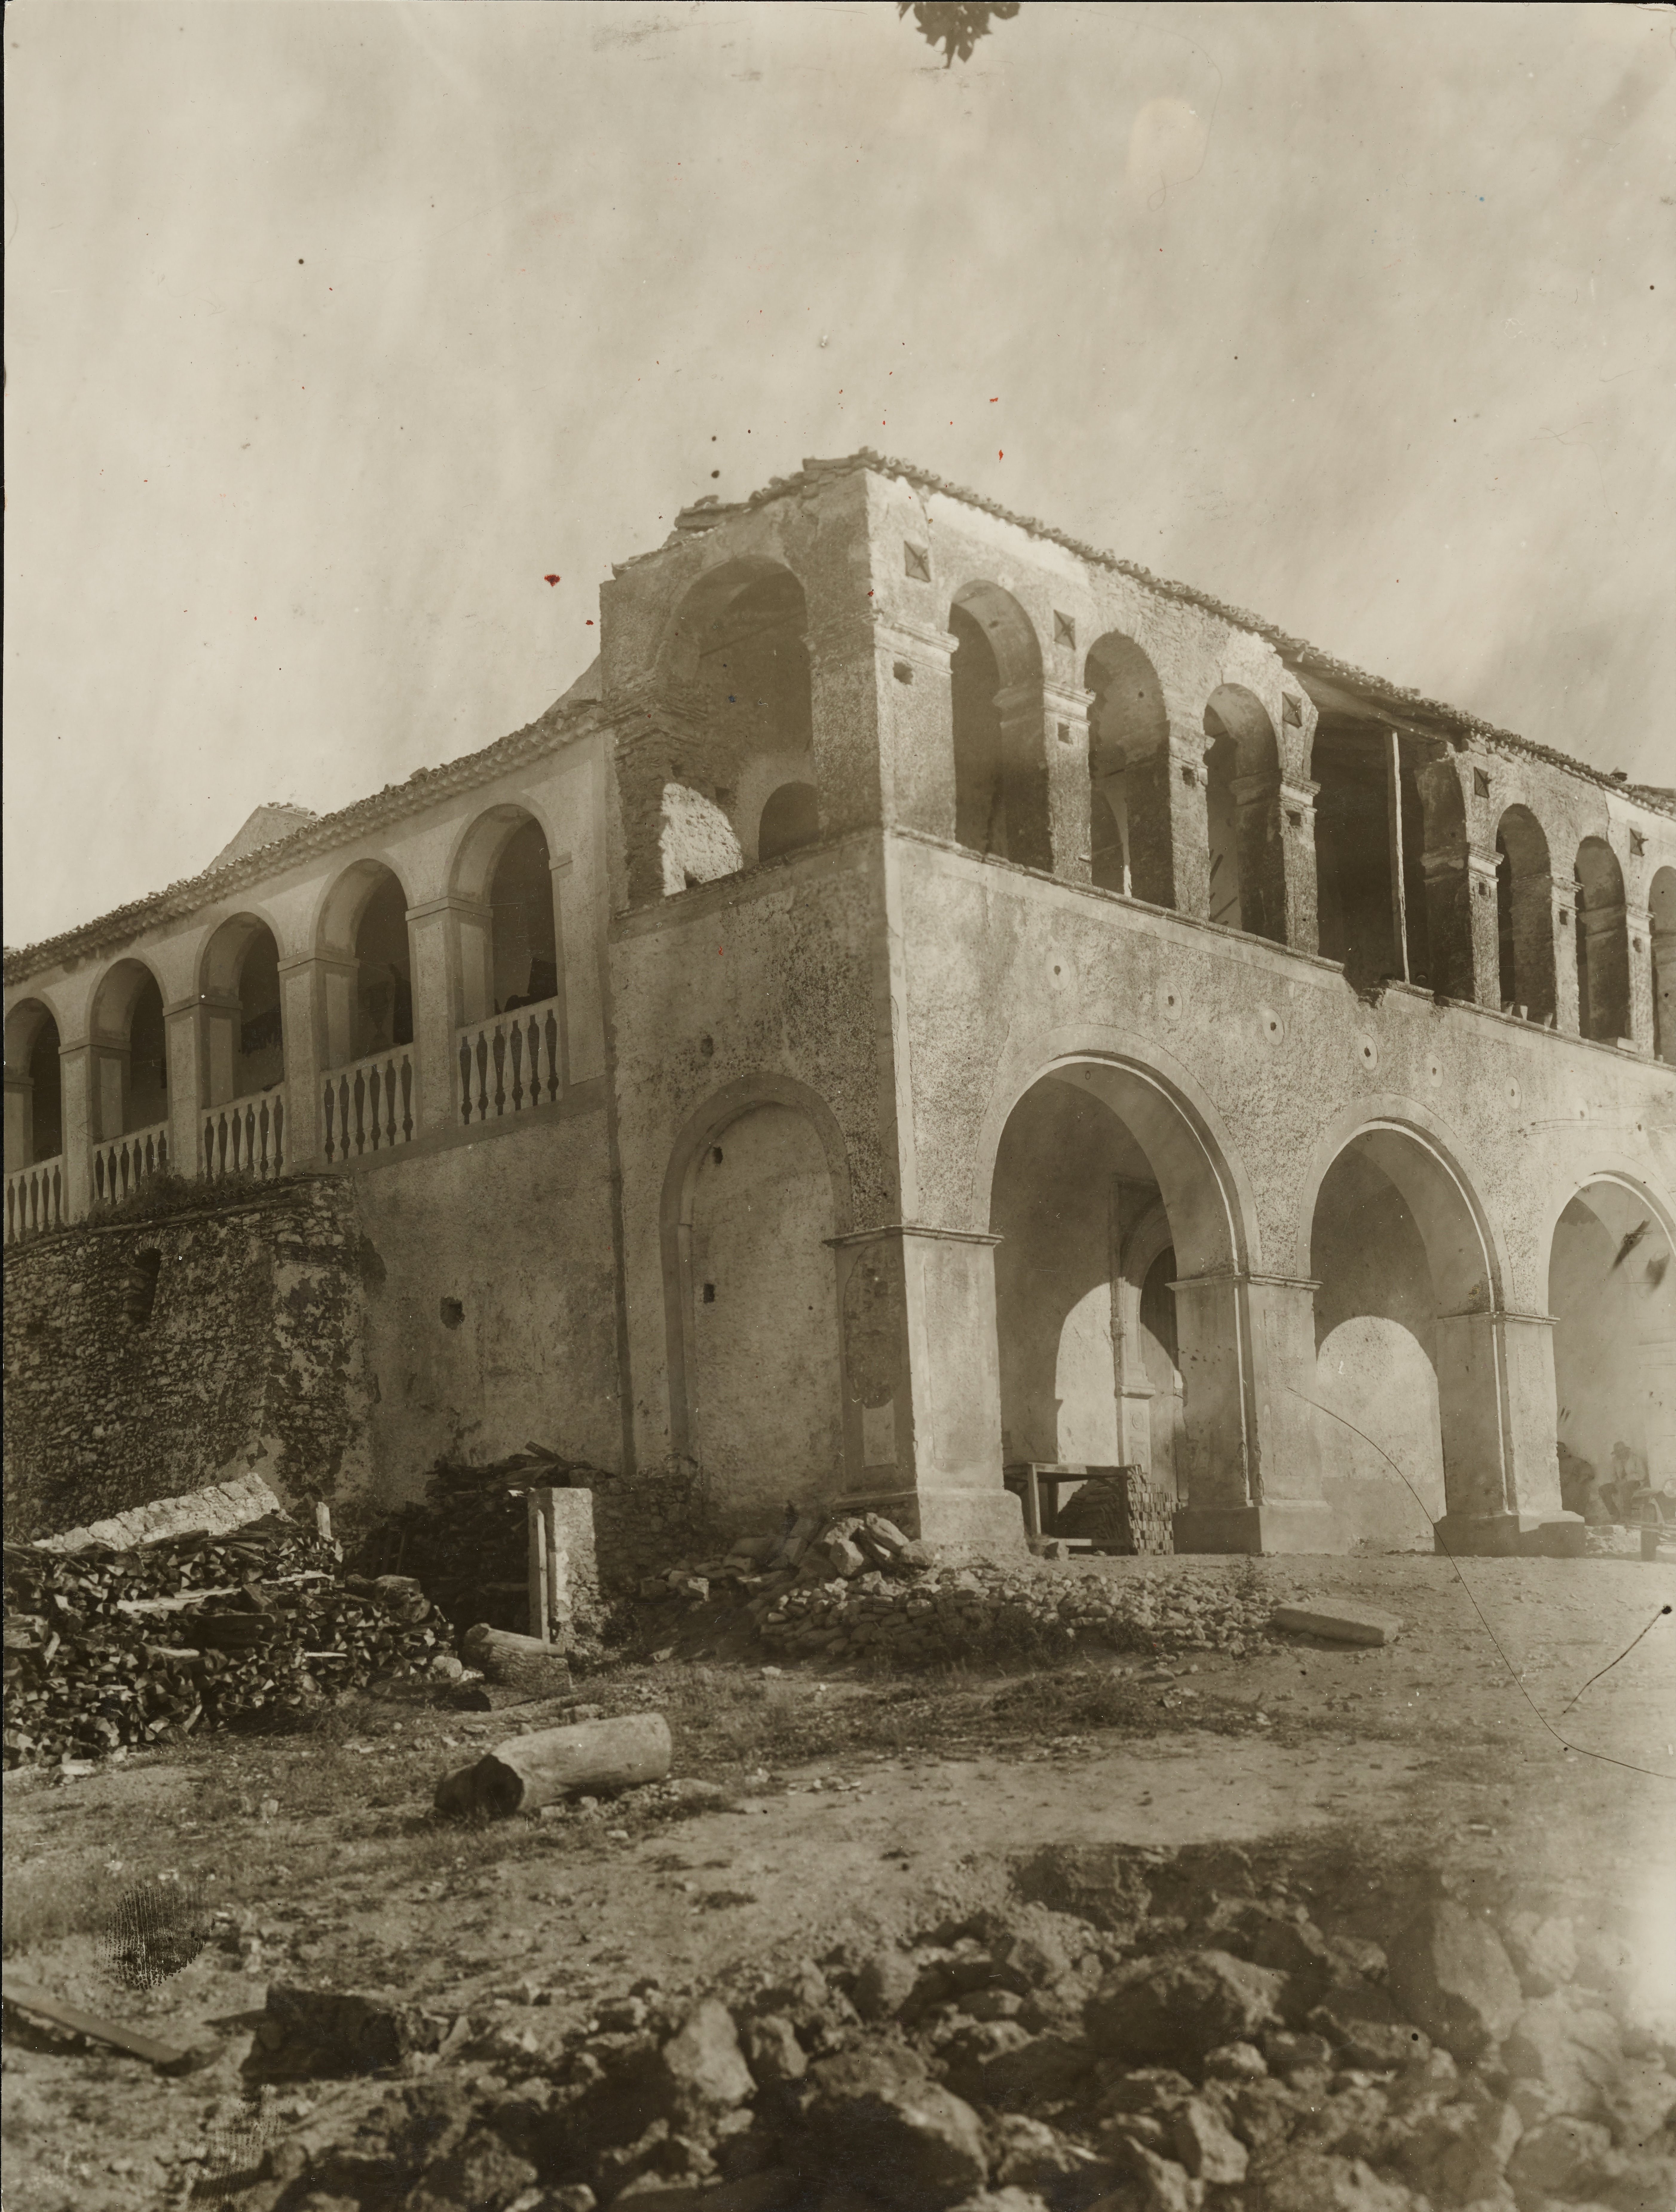 Fotografo non identificato, Tricarico - Convento di S. Antonio da Padova, danneggiato dal terremoto, MPI6121388